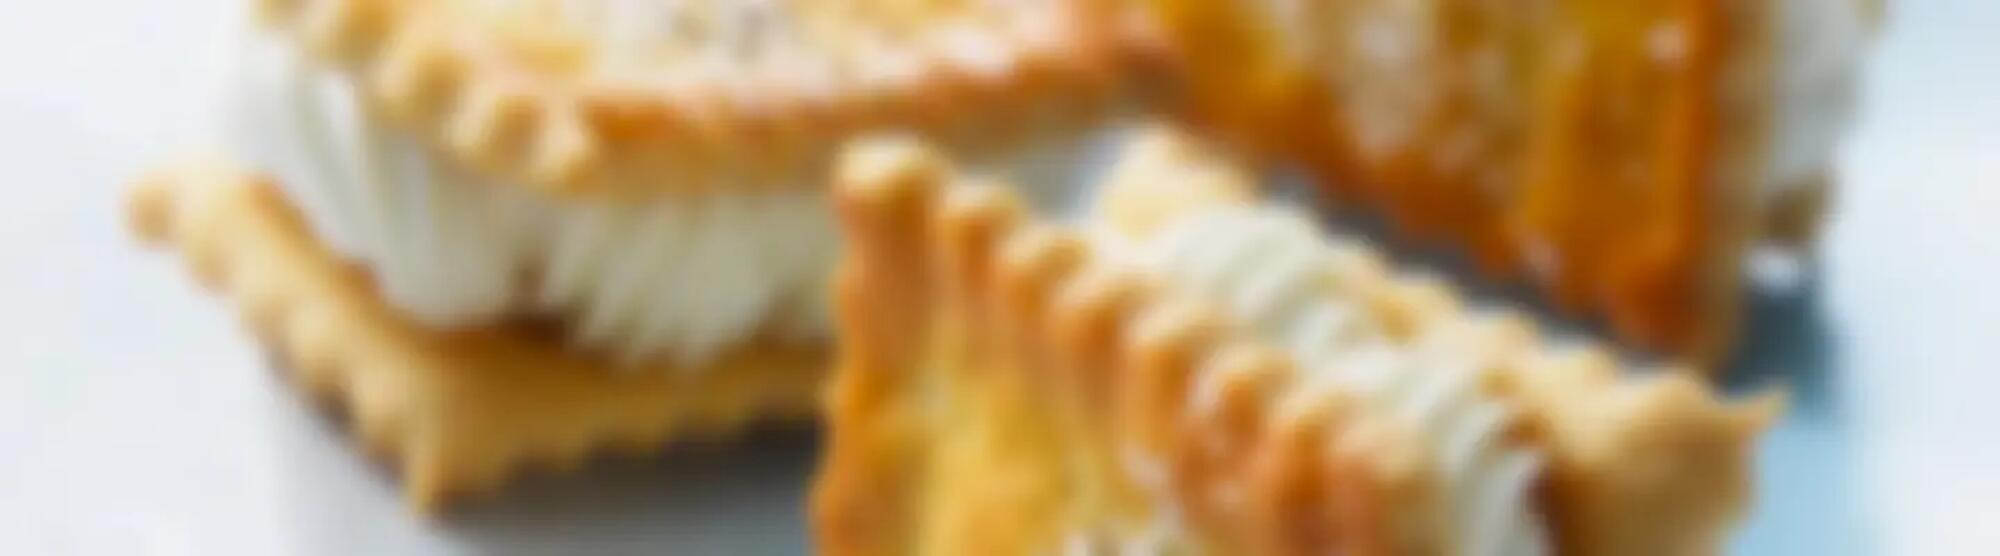 Recette : Crackers provençaux au fromage frais